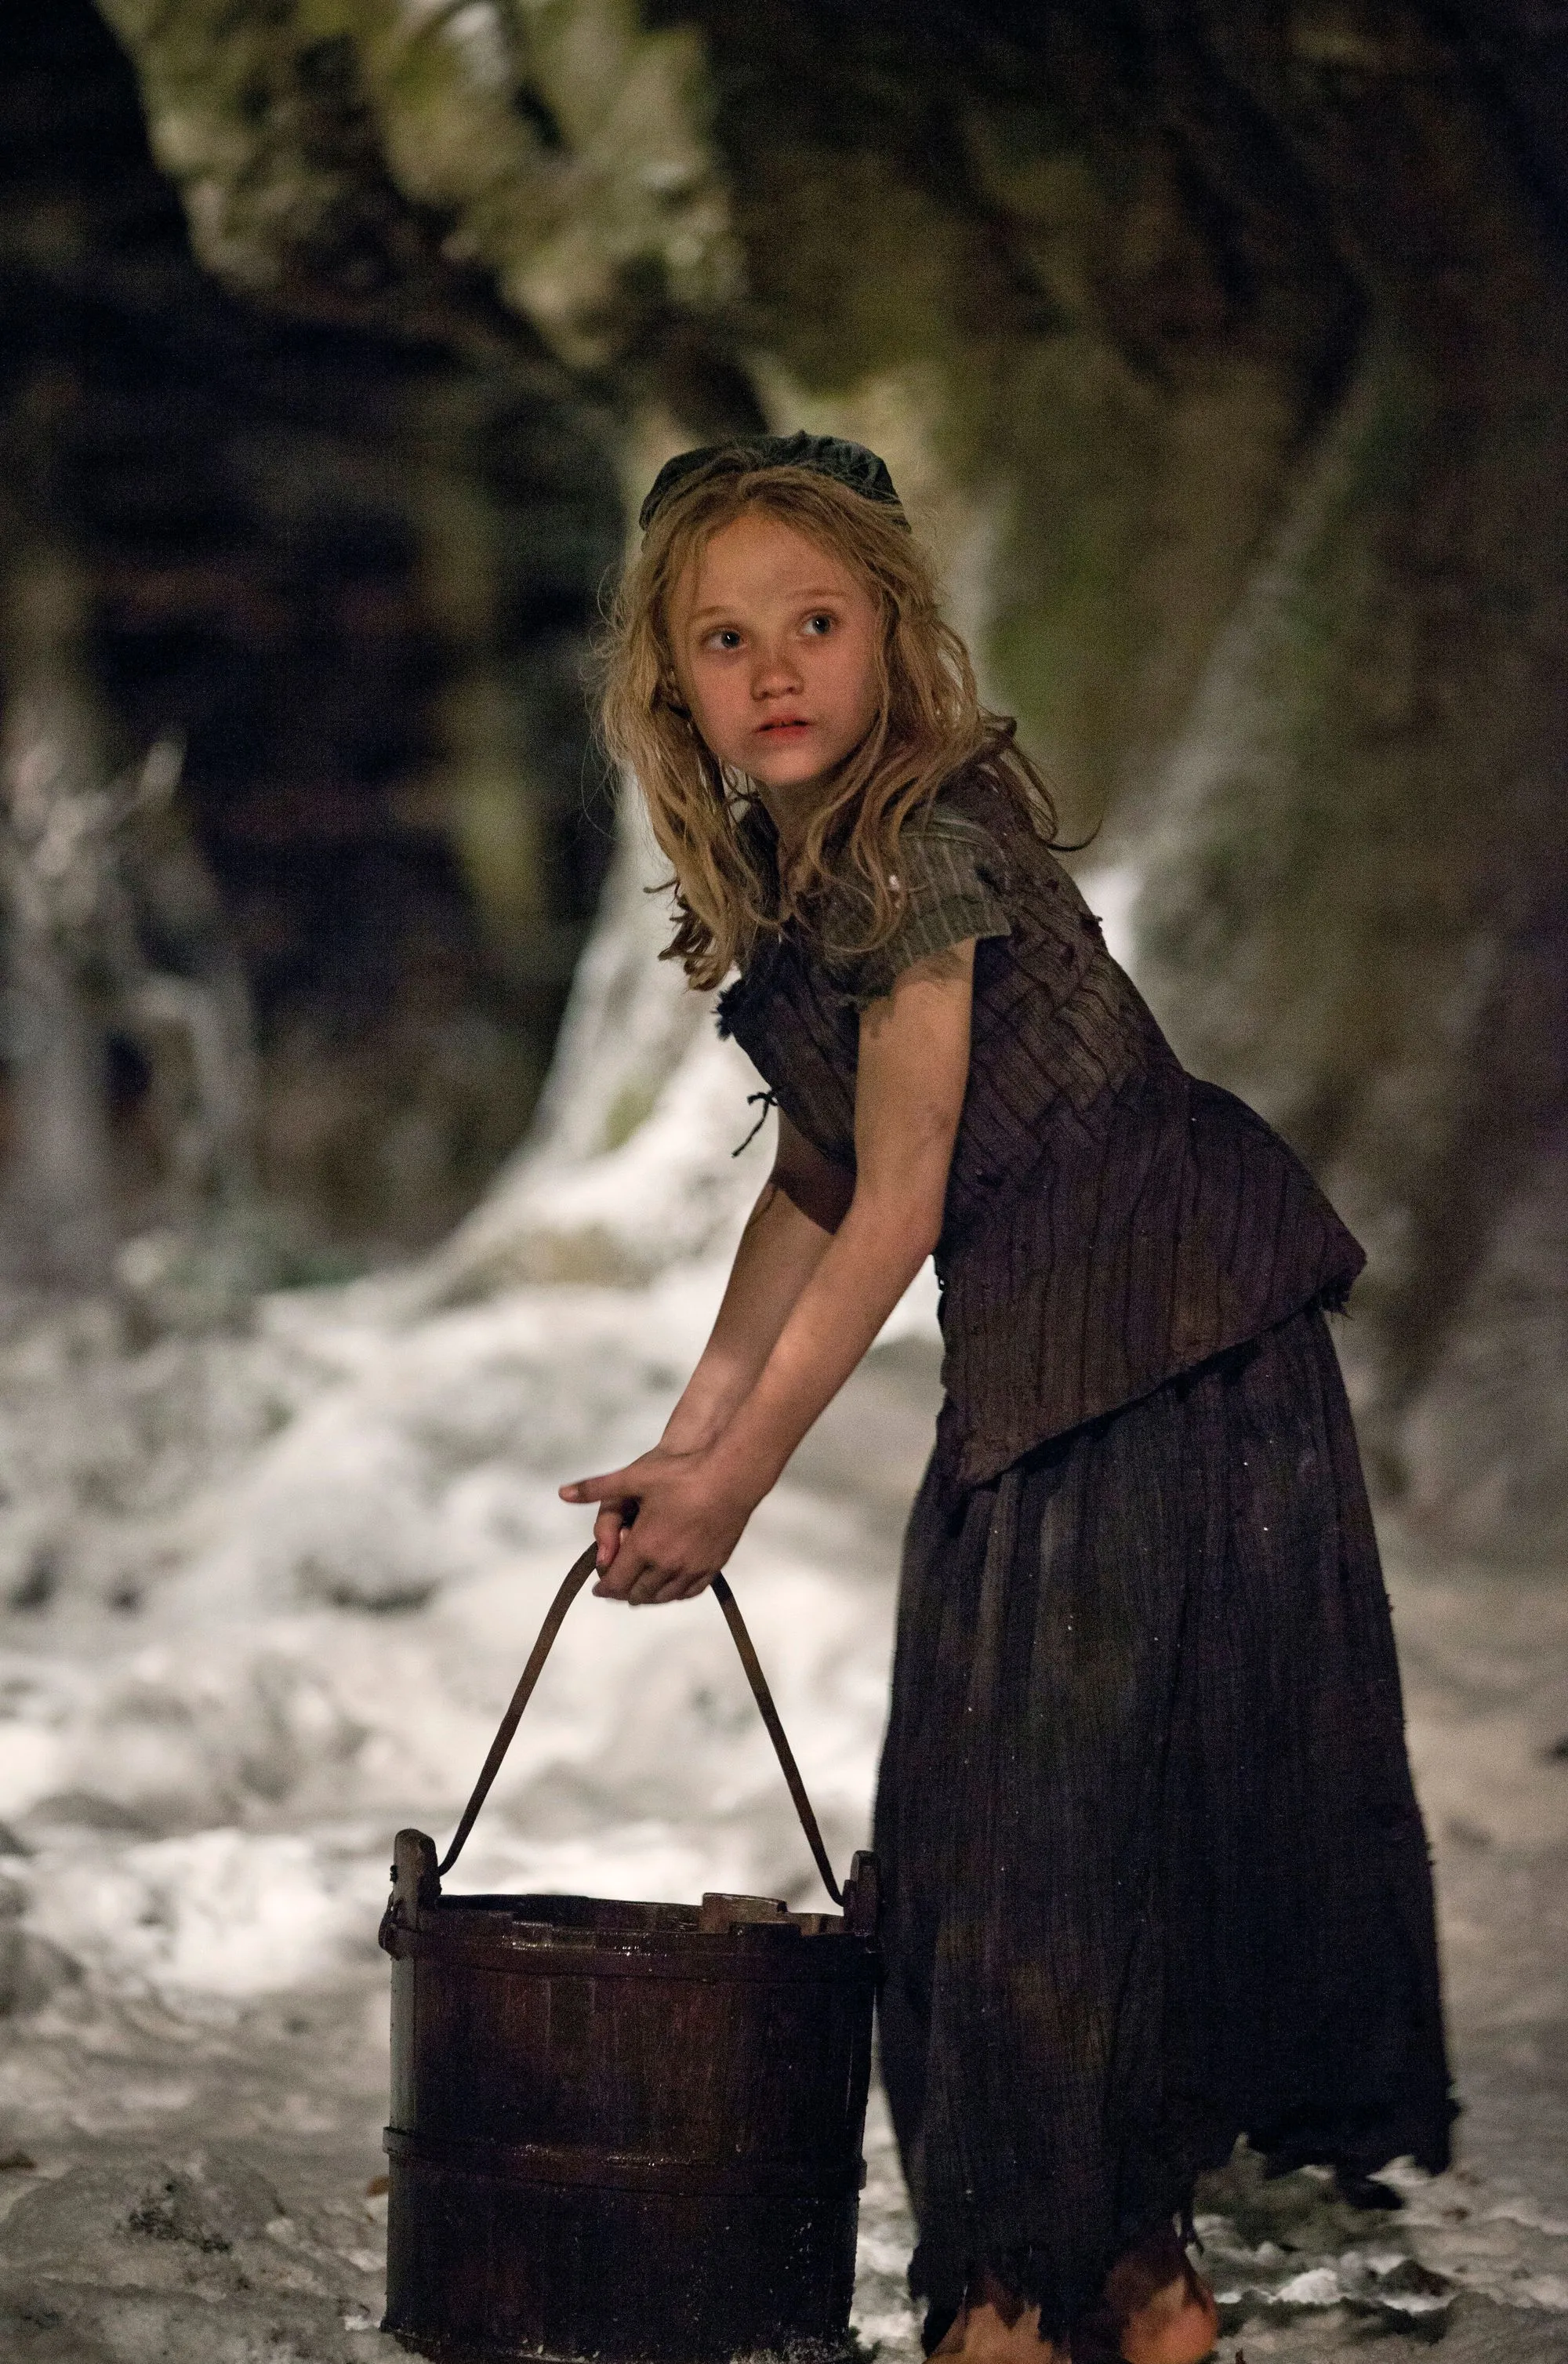 Photogramme du film musical Les Misérables de Tom Hooper, 2012, avec Isabelle Allen (Cosette).